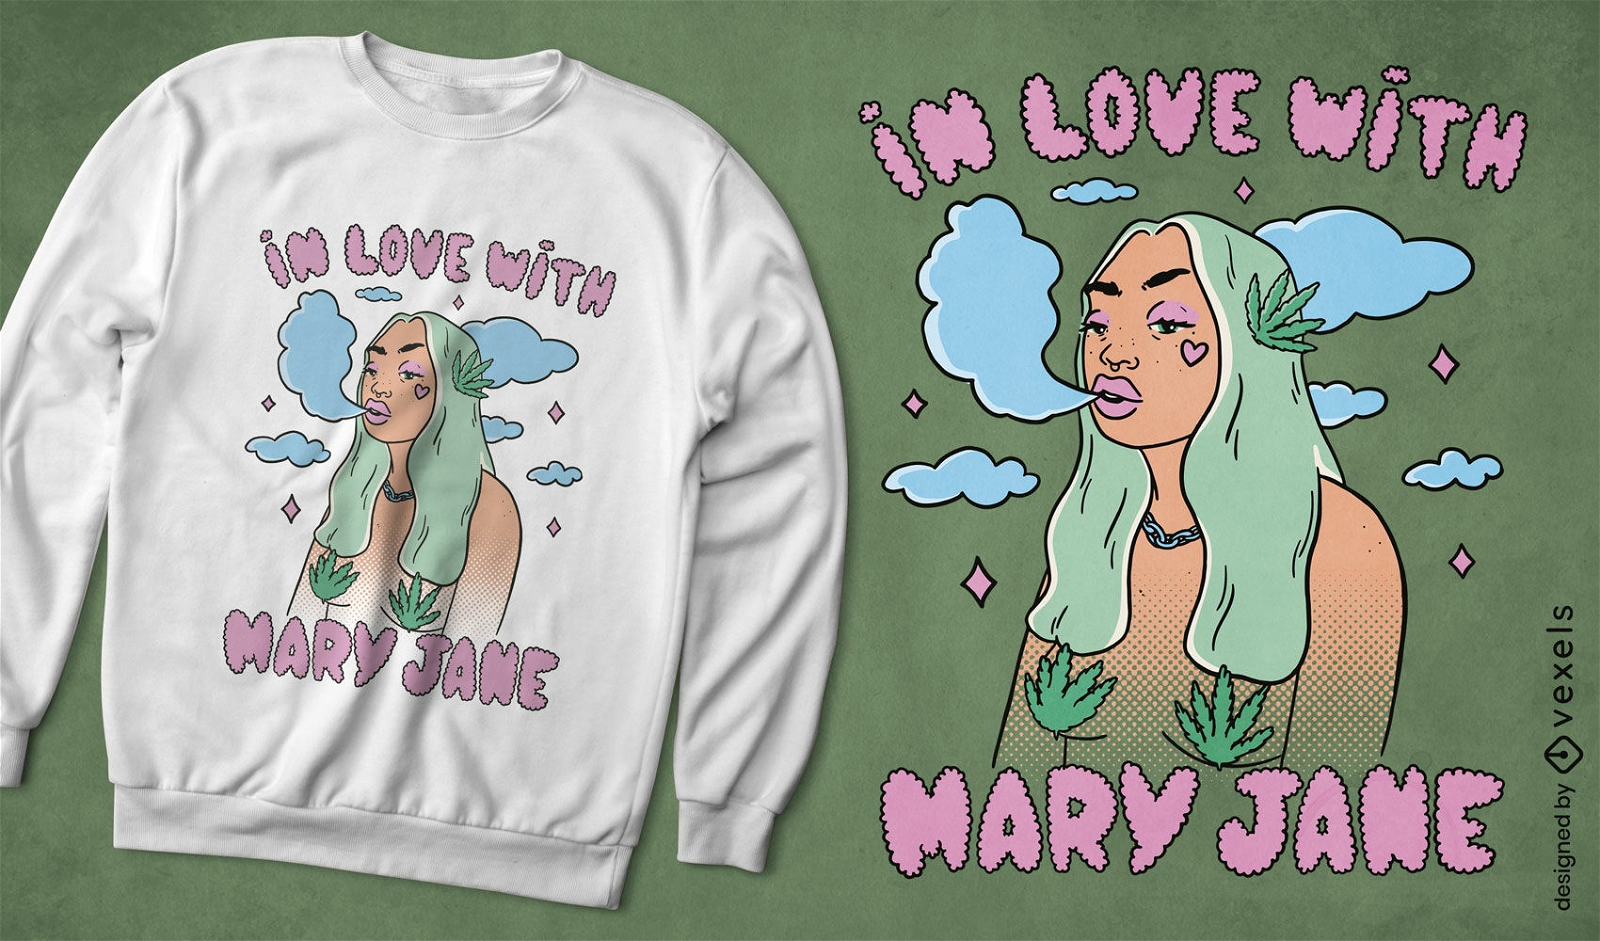 Hippie woman smoking weed t-shirt design